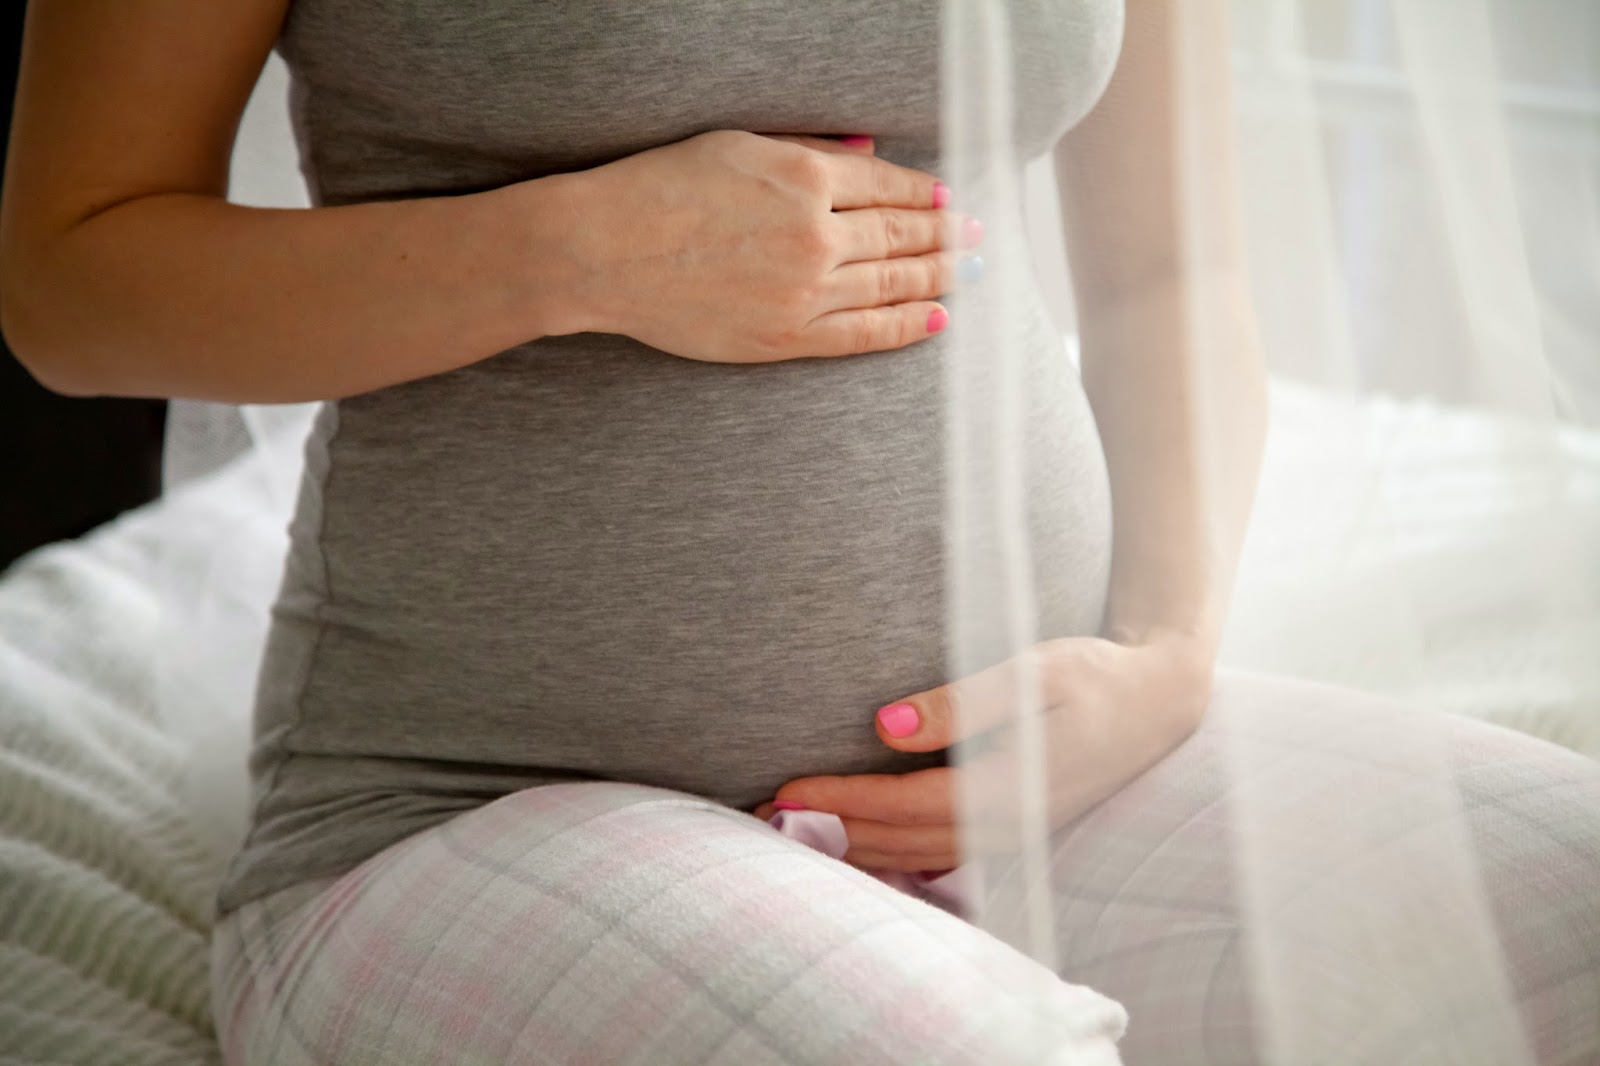 Начинаются признаки преждевременных родов на 22 неделе, причины могут крыться во многих факторах